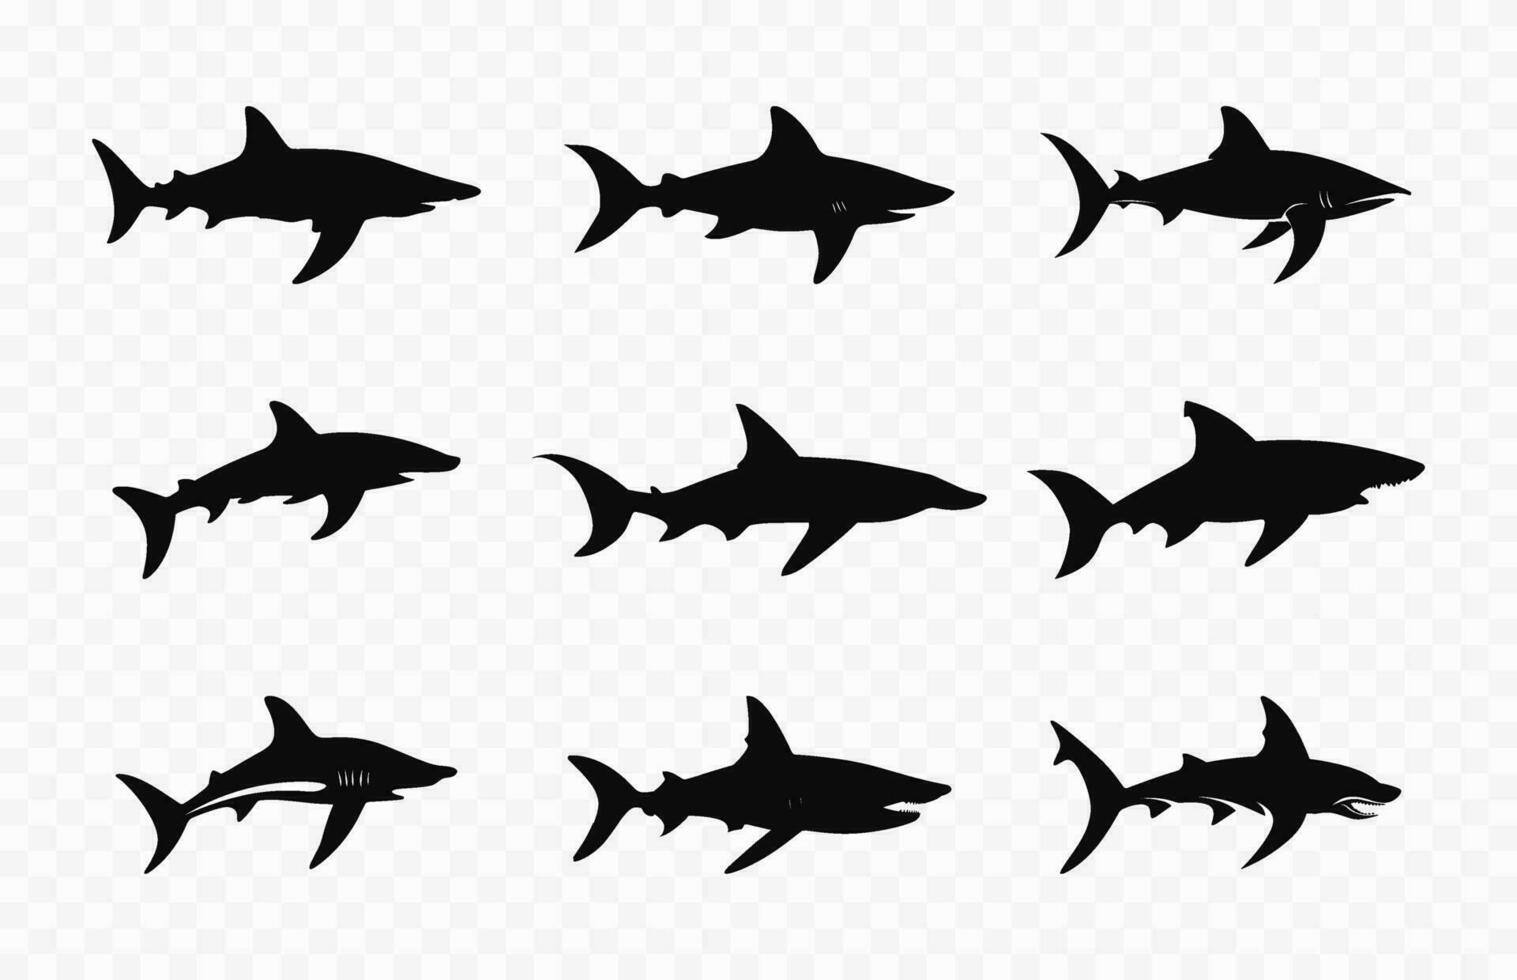 martello squalo nero silhouette impostare, martello squali sagome vettore